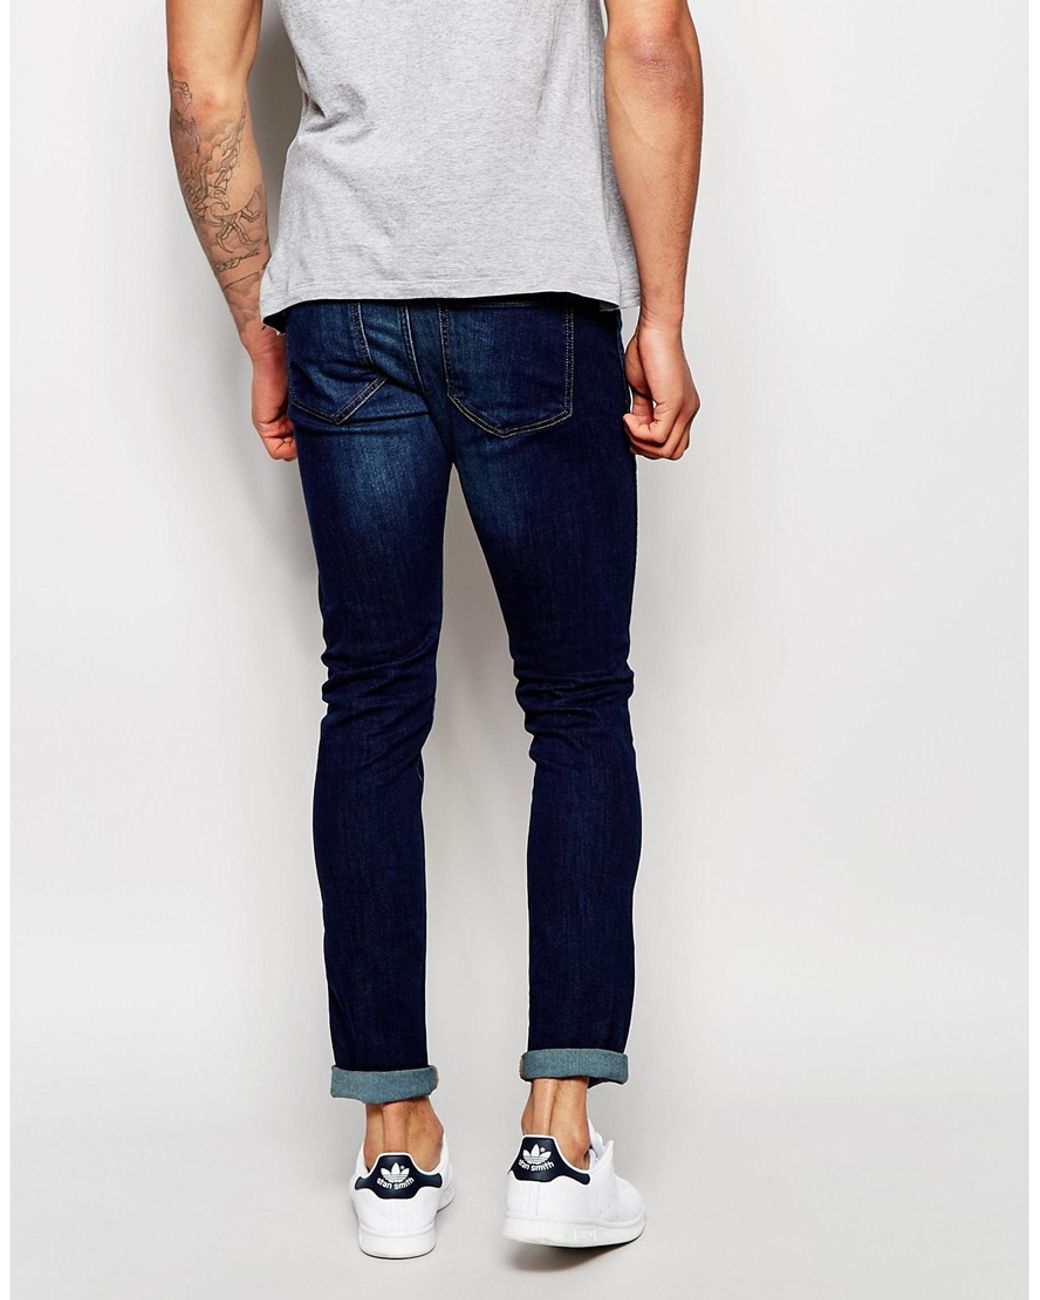 Dr. Denim Jeans Snap Super Skinny Fit Dark Blue Wash for Men | Lyst